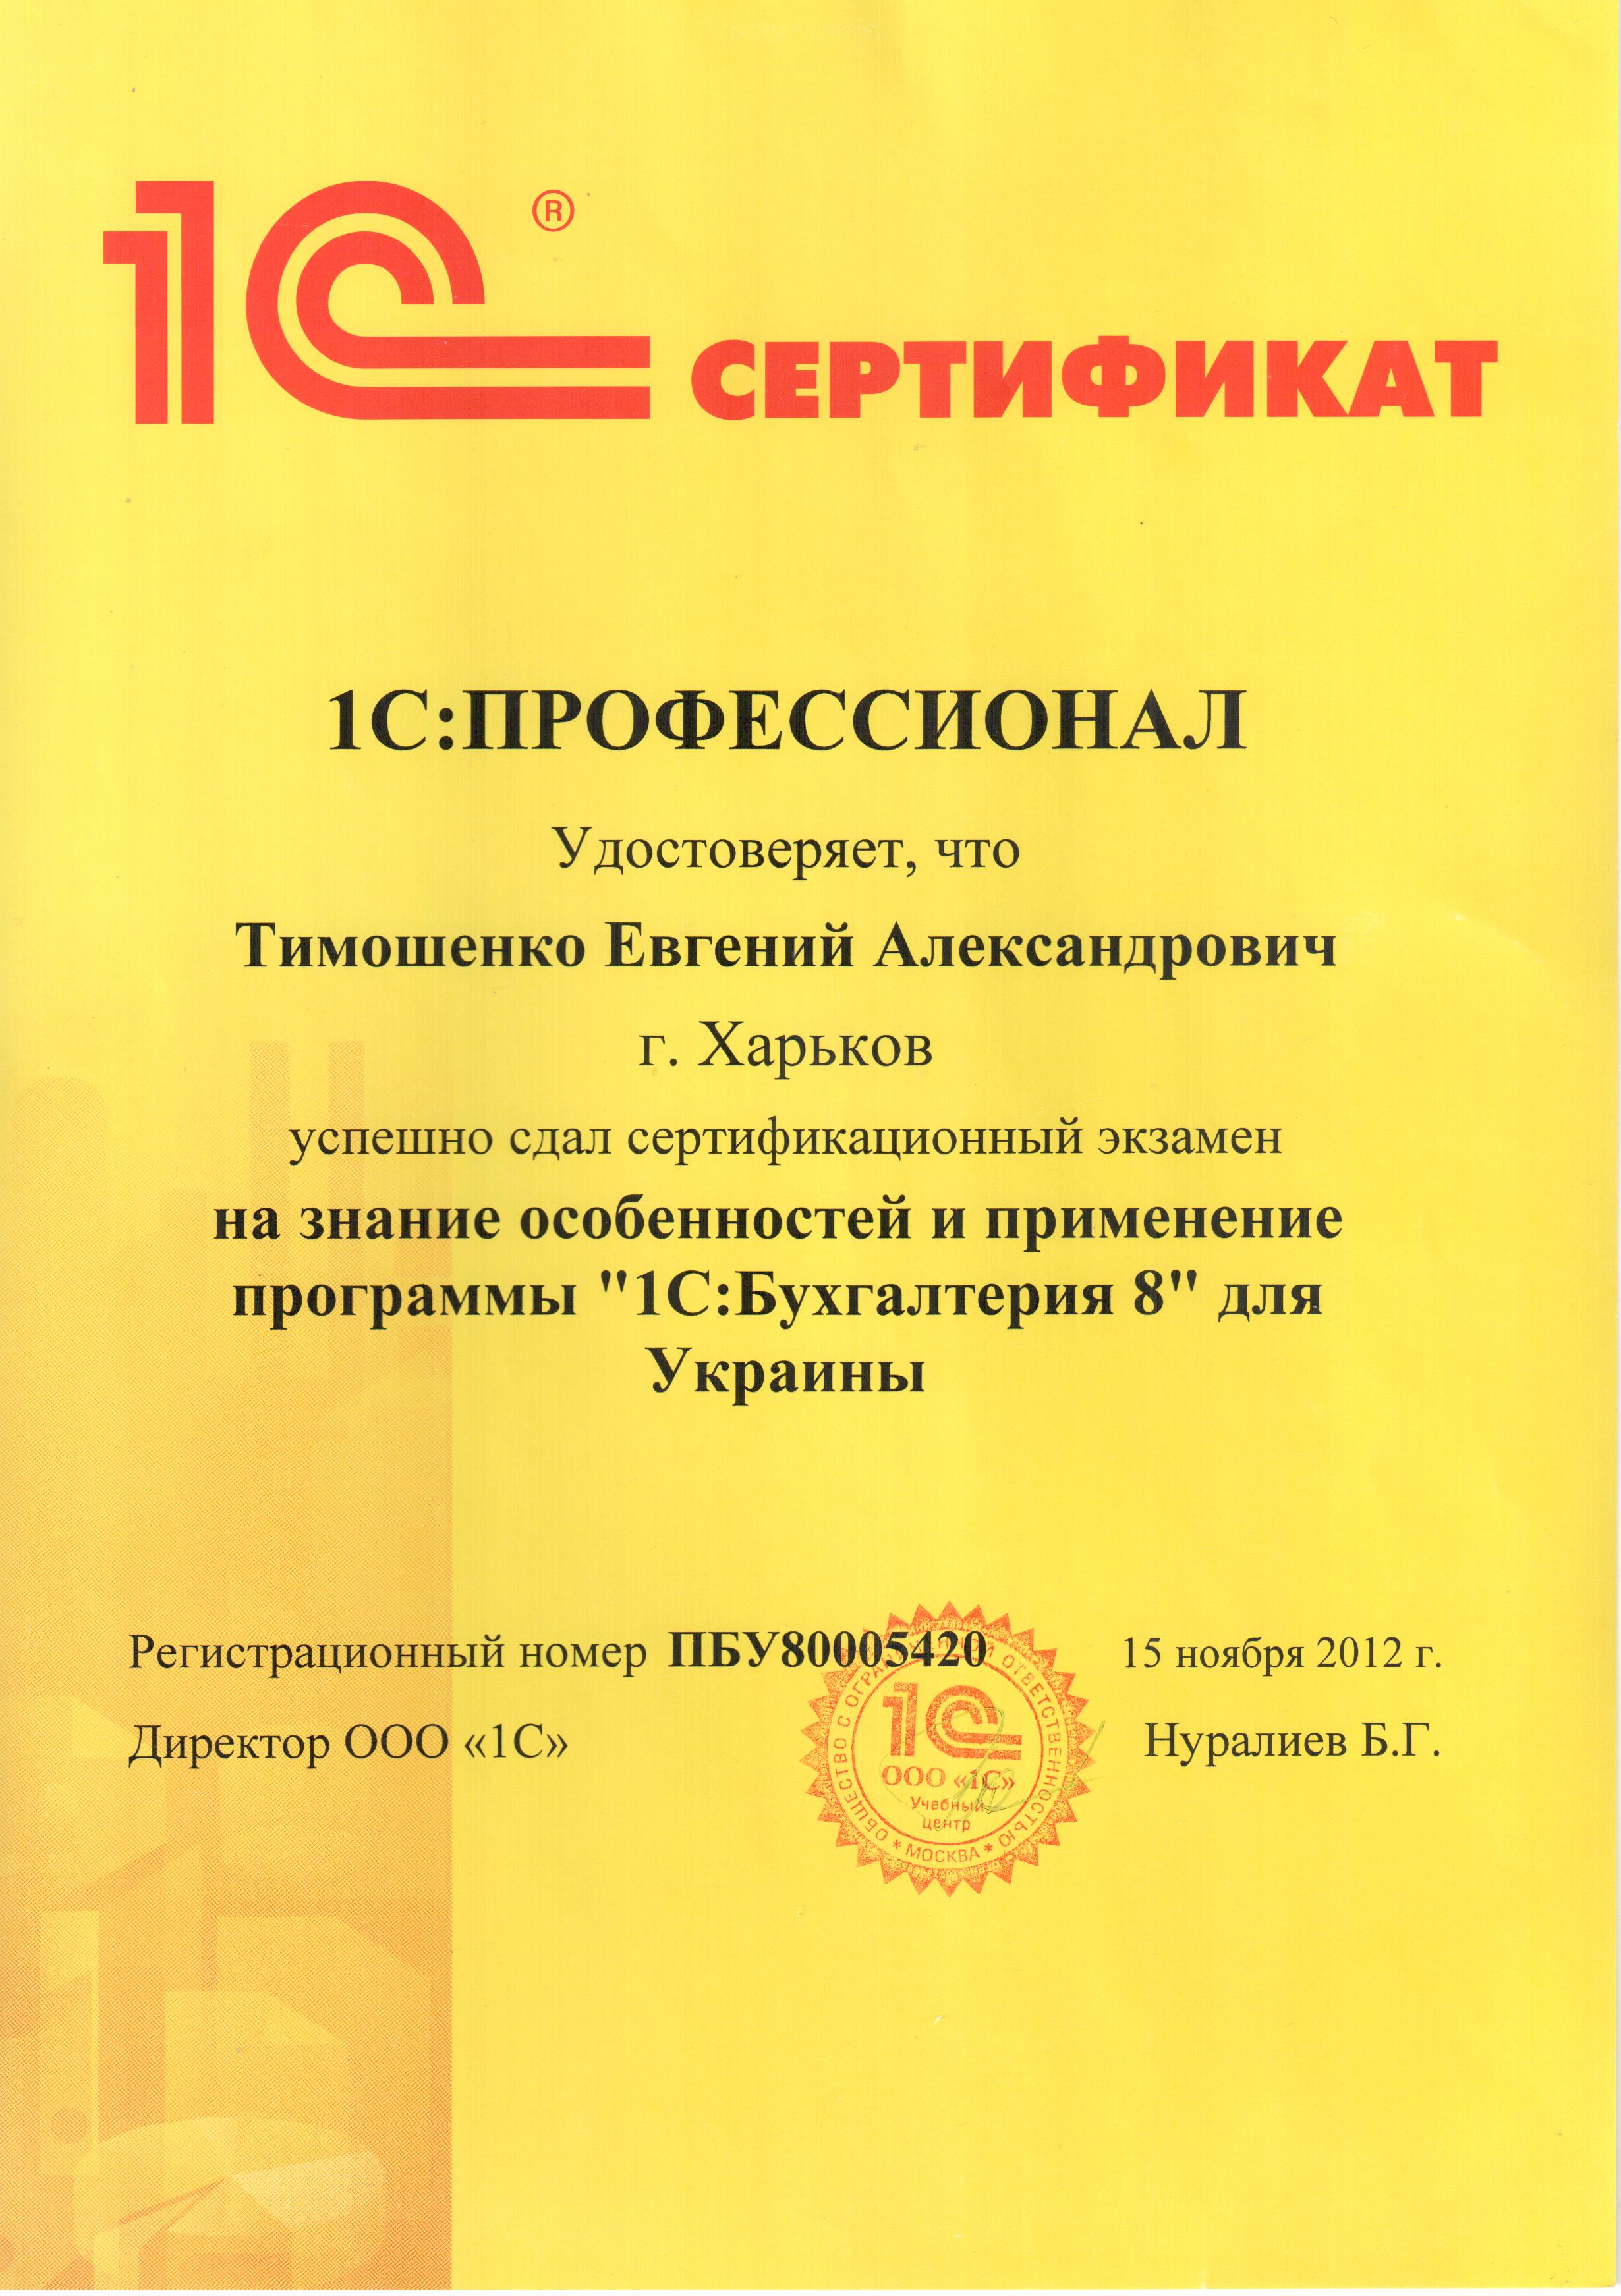 Сертификат 1С:Профессионал (Бухгалтерия)